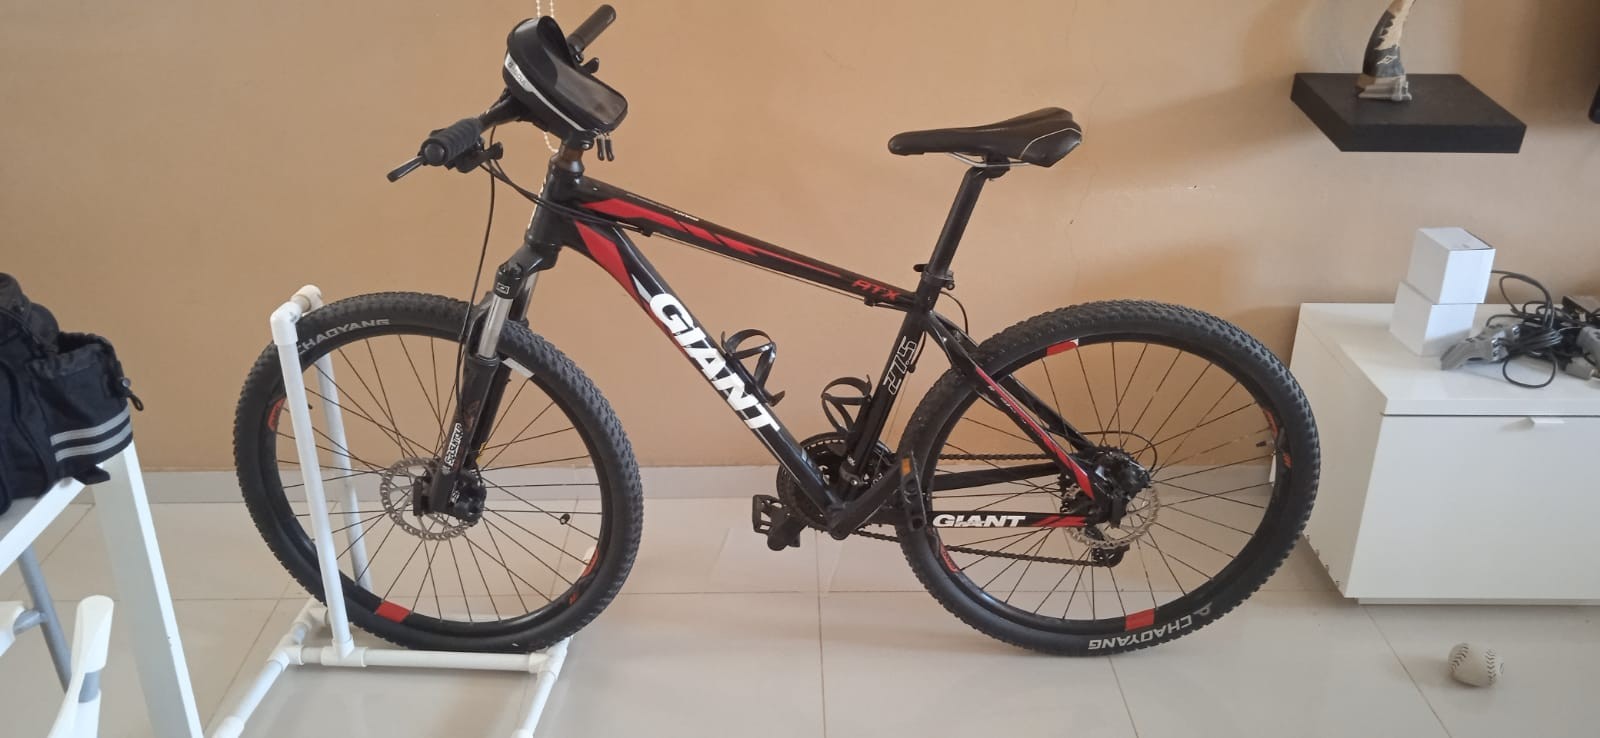 bicicletas y accesorios - Bicicleta MTB Giant Aro 27.5 Sizes M